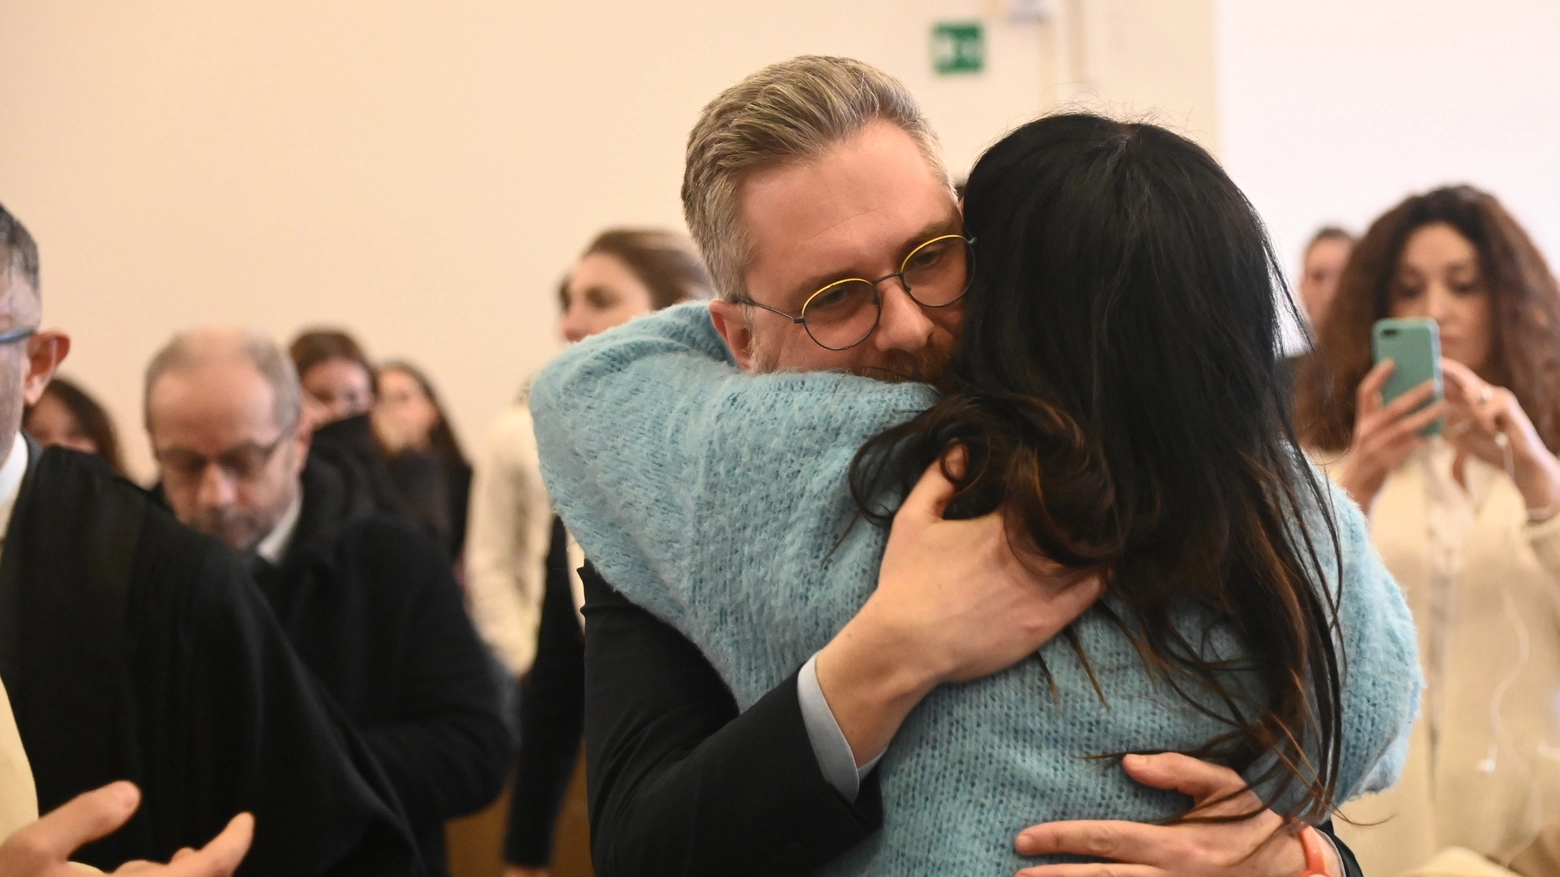 L'abbraccio tra il sindaco di Bologna Lepore e Stefania Matteuzzi, sorella della vittima (foto Schicchi)